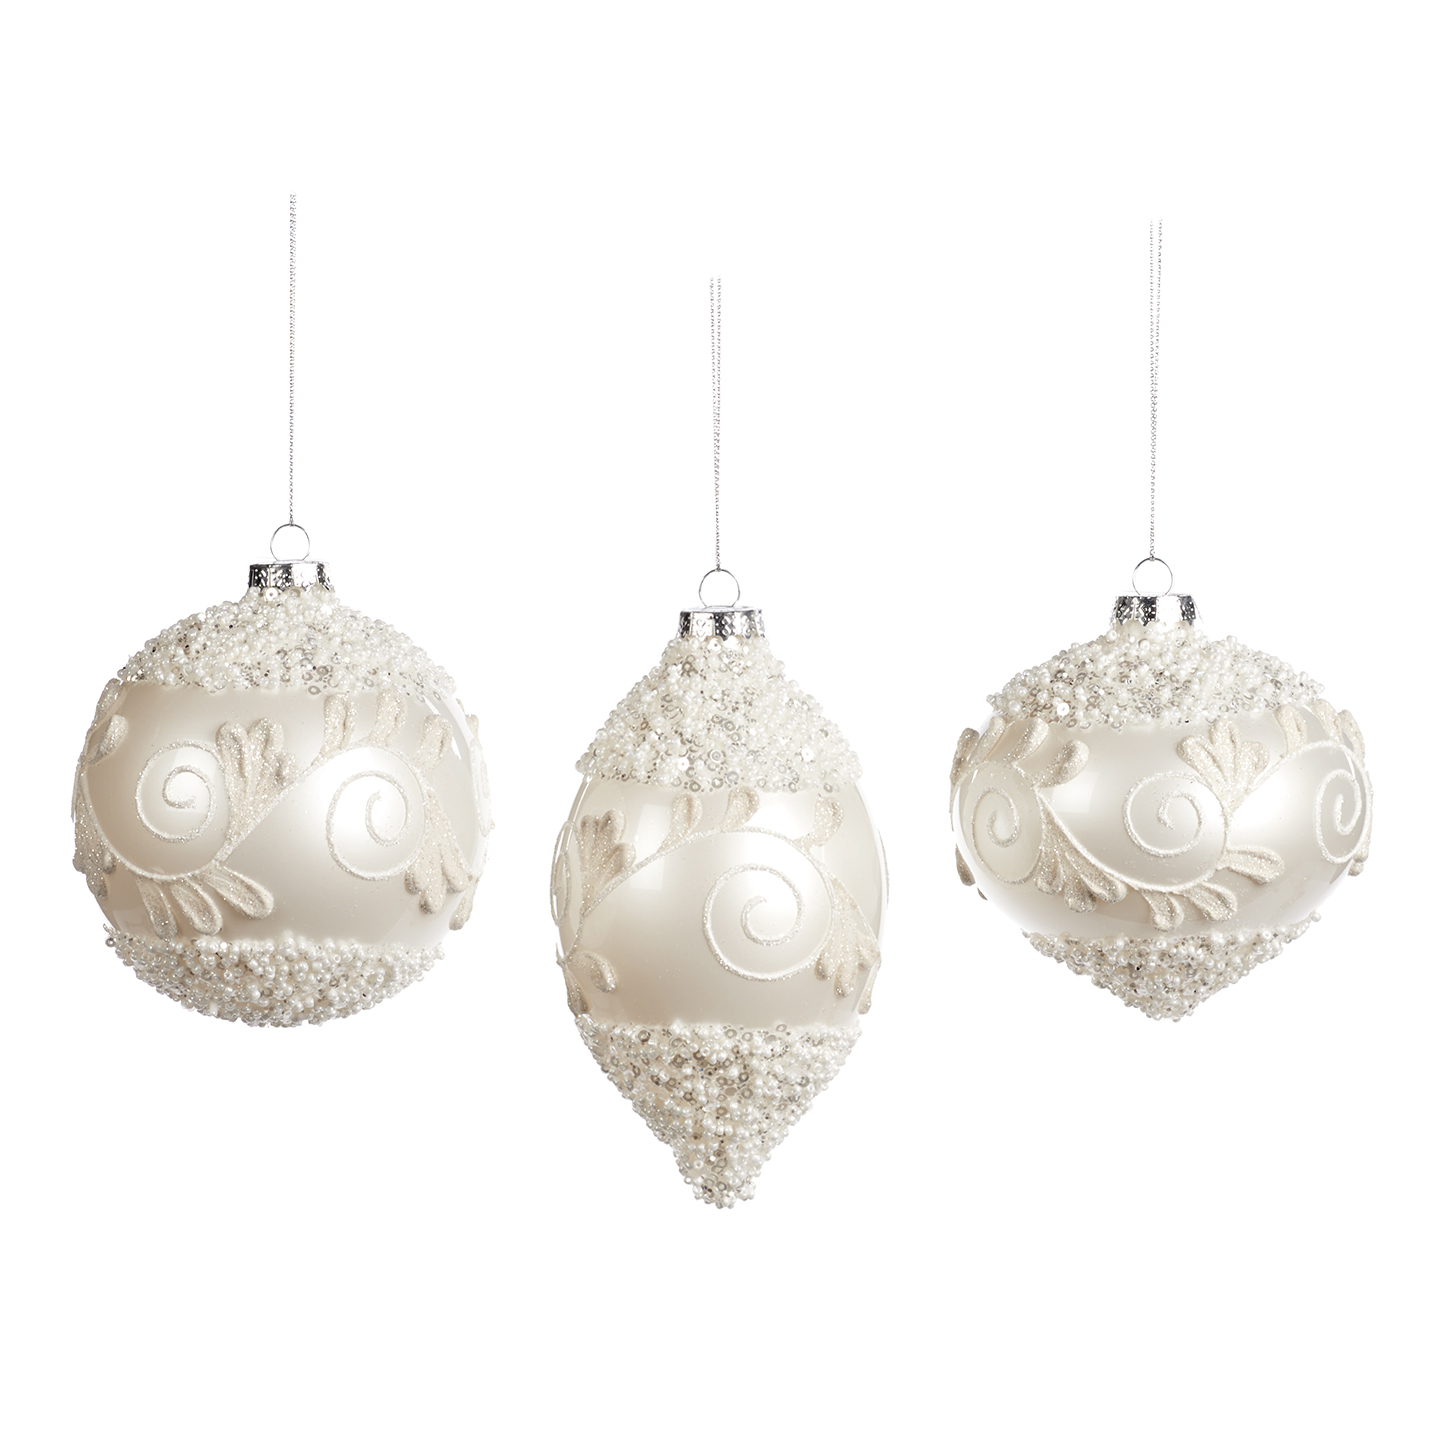 Pallina natalizia in vetro bianco con decoro a rilievo - 3 modelli ass. - H. 10 cm - Collezione 2022 - Goodwill